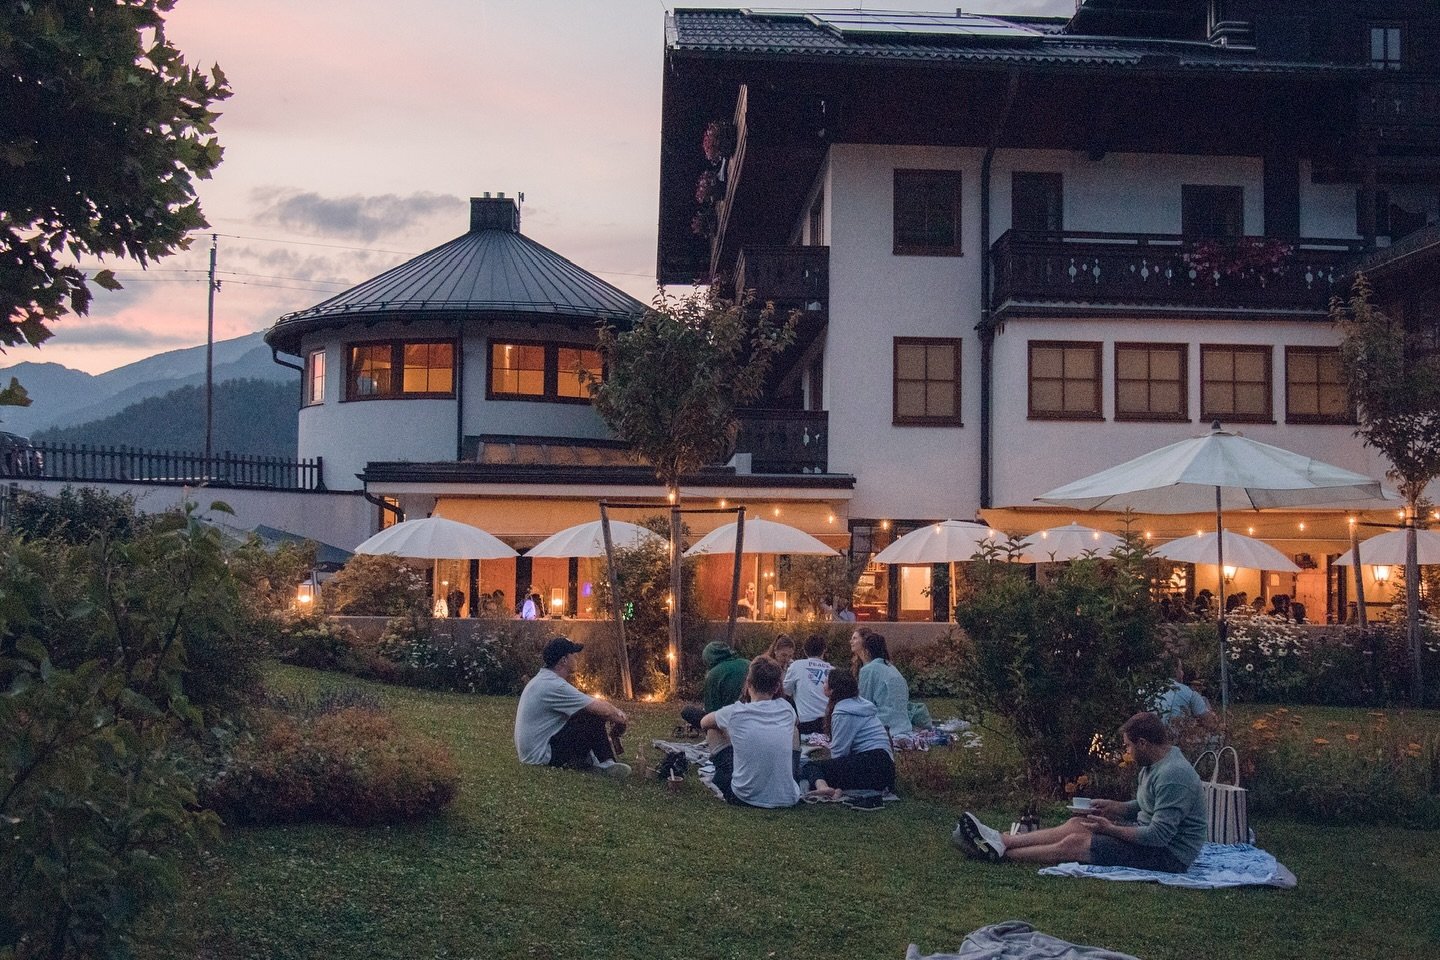 wir freuen uns schon auf den Sommer und auf die gem&uuml;tlichen Abende bei uns auf der Terrasse 🚀🌞

#sushi #seesushi #sommer #summer #summertime #letsgo #yummi #austria #strobl #visitaustria #salzkammergut #genuss #qualit&auml;t #nachhaltig